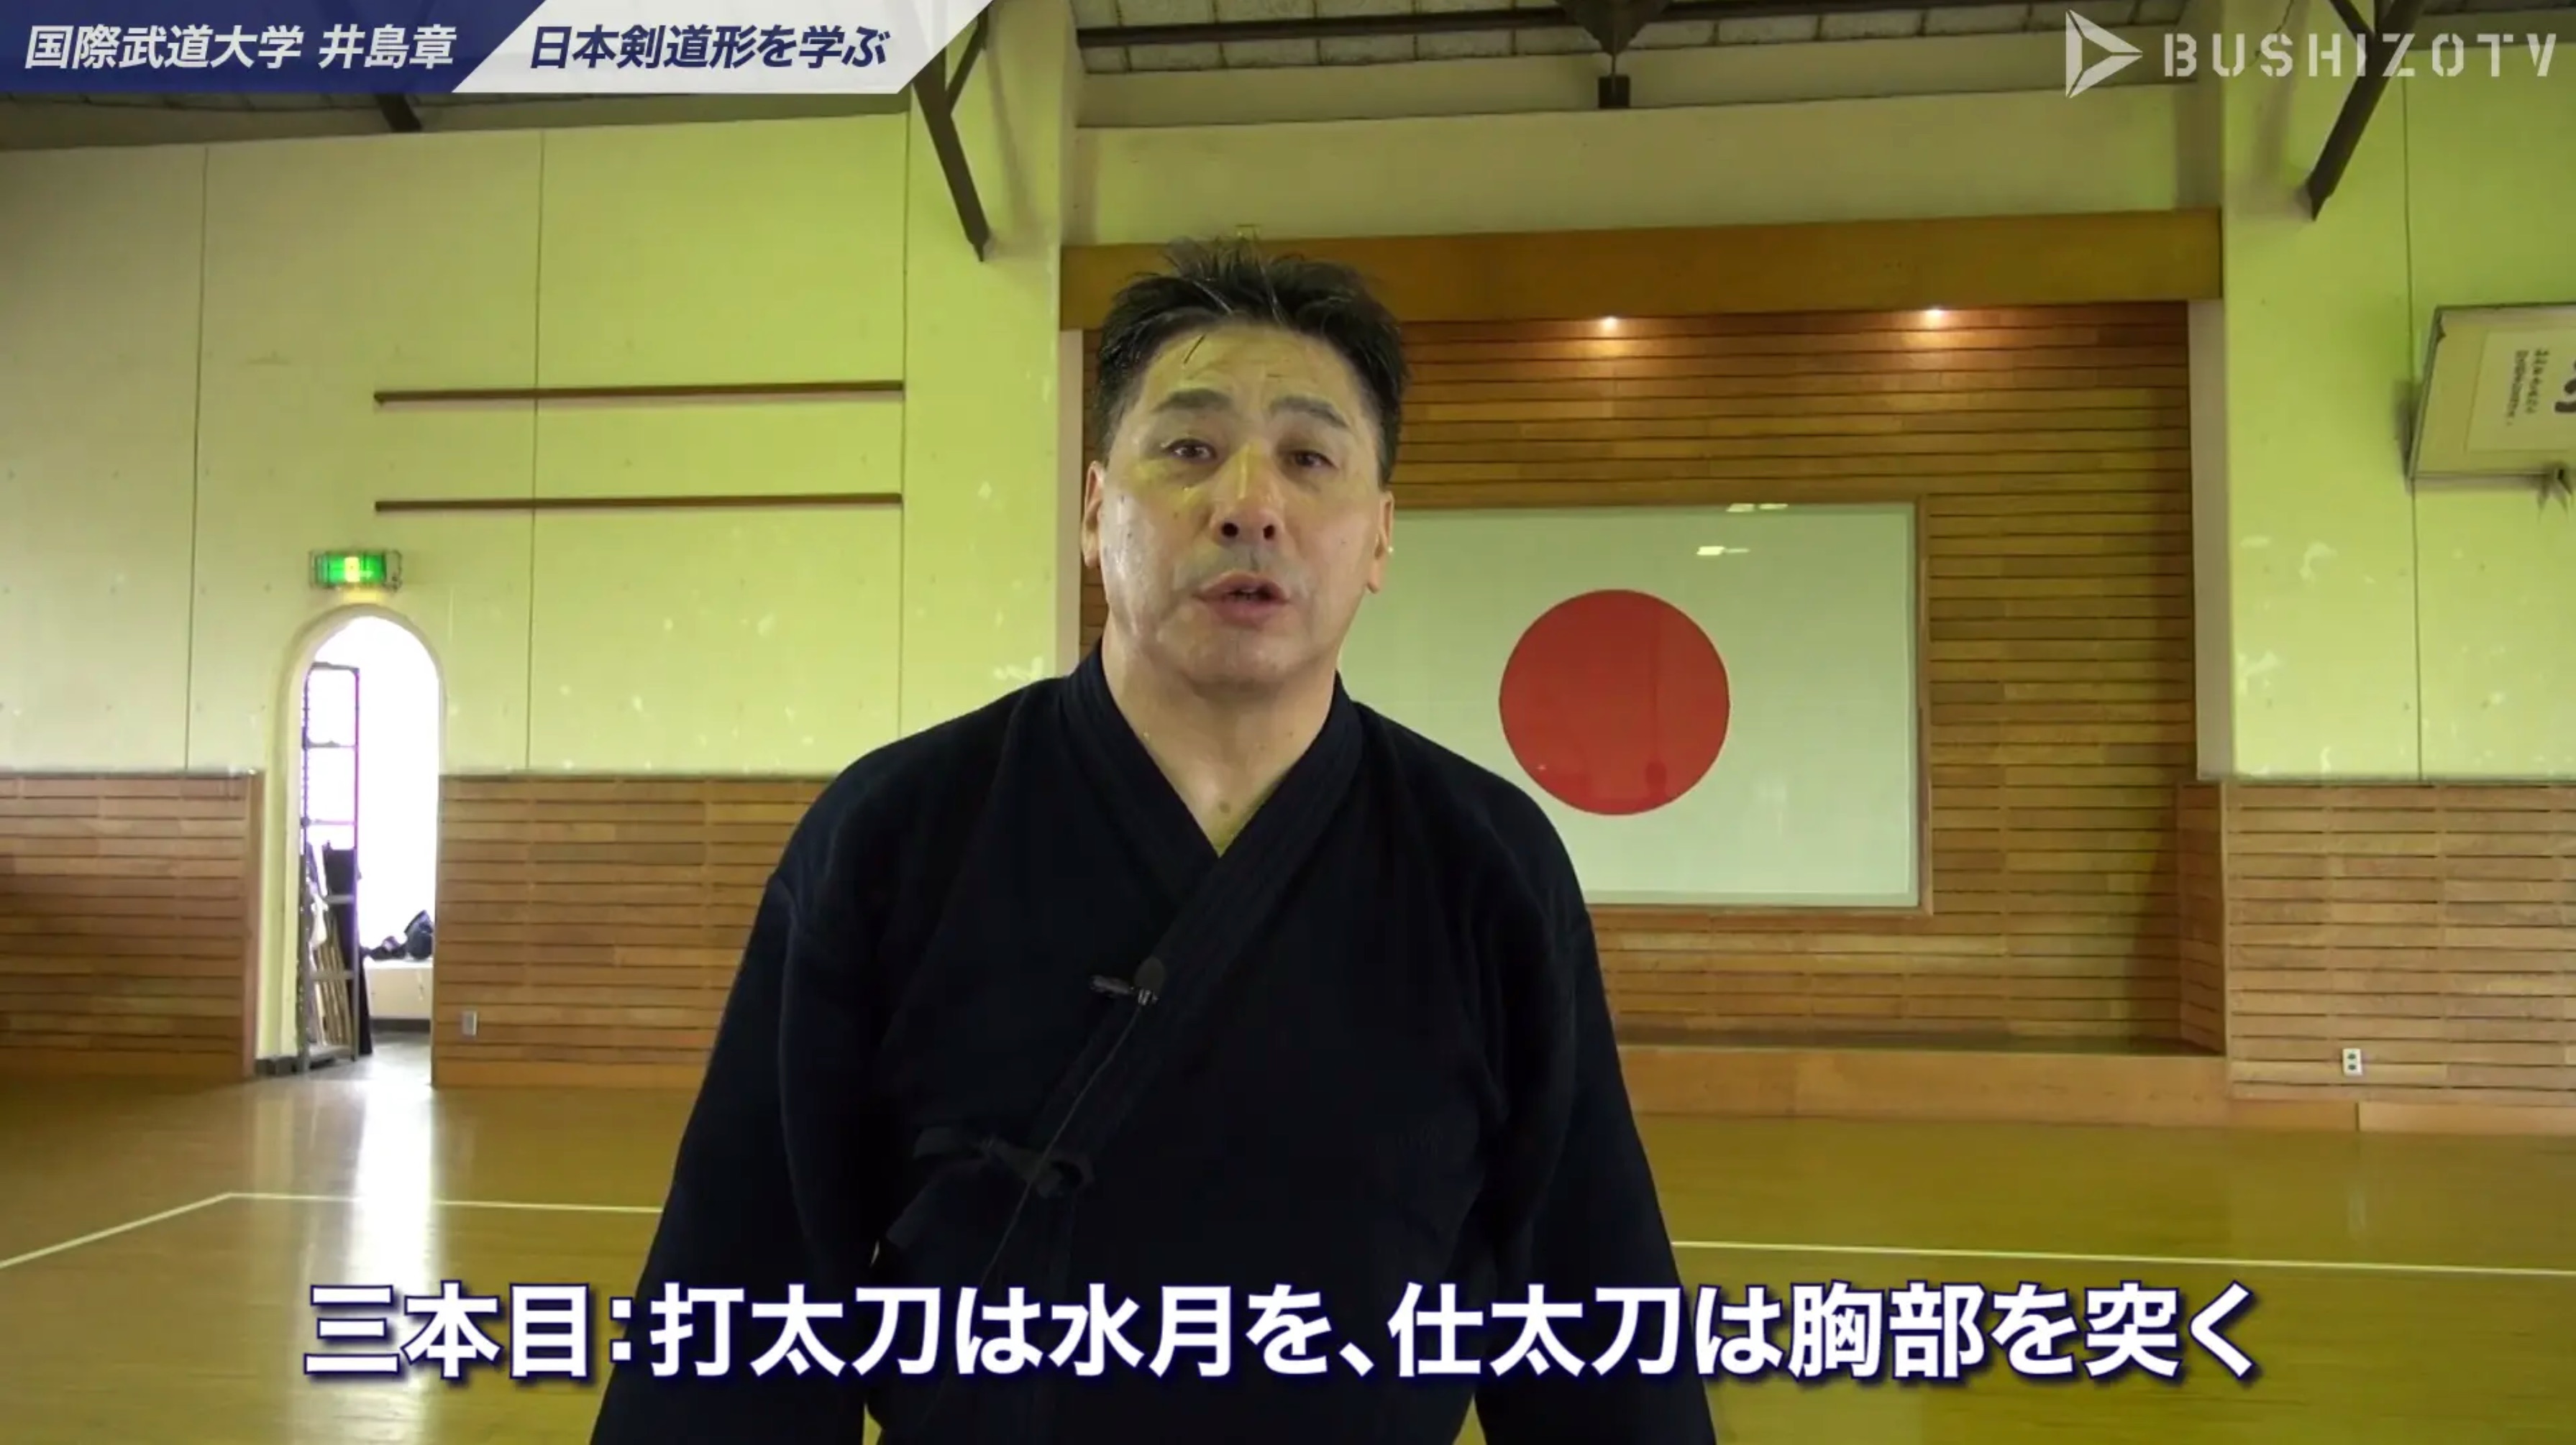 教士八段 井島章 日本剣道形の指導 三本目 Bushizo Tv